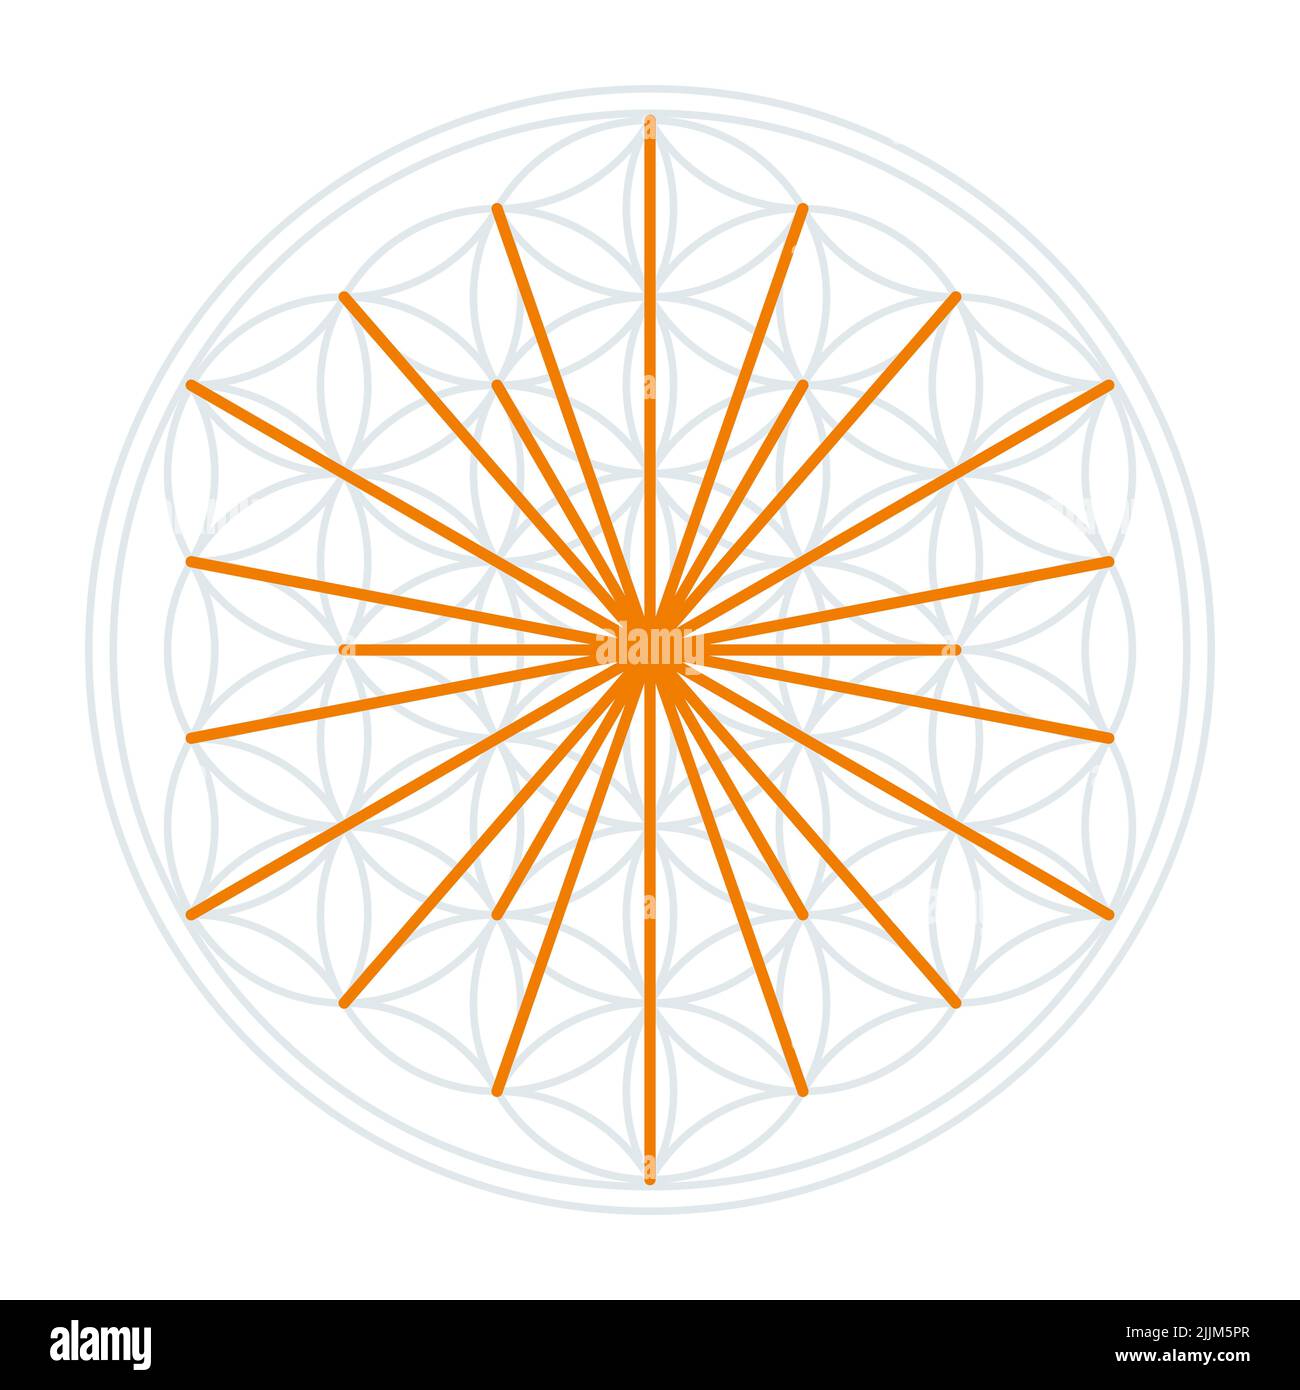 Sonnensymbol in der Blume des Lebens. Orangefarbene Linien, die die Sonnenstrahlen symbolisieren, abgeleitet von den Schnittpunkten überlappender Kreise. Stockfoto